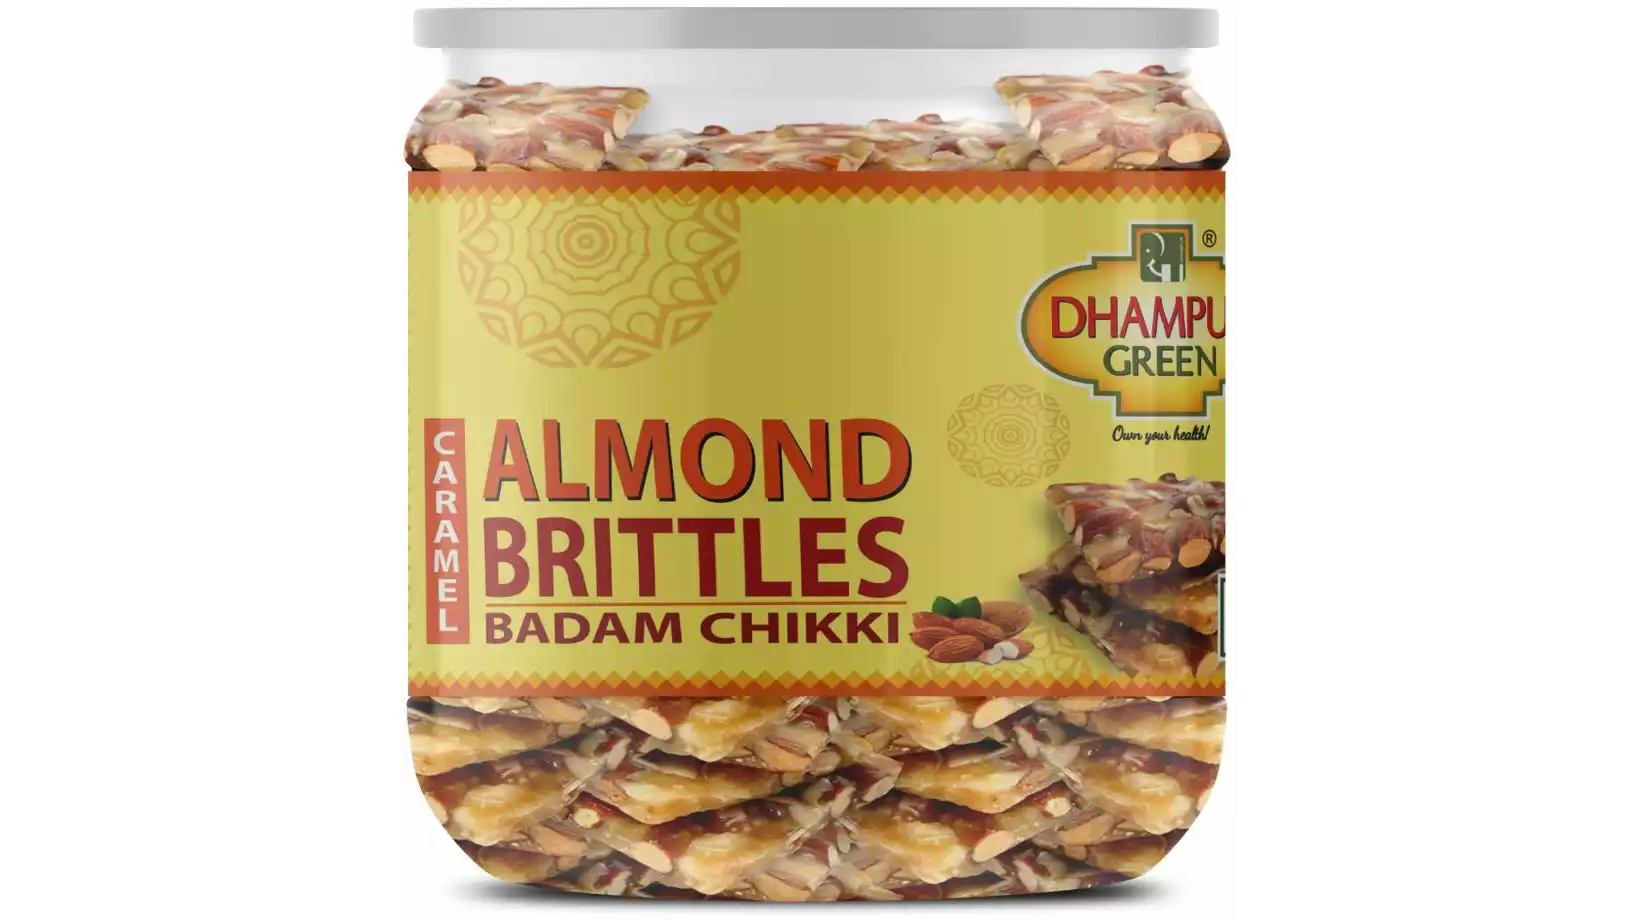 Dhampur Green Almond Brittles (Badam Chikki) (200g)